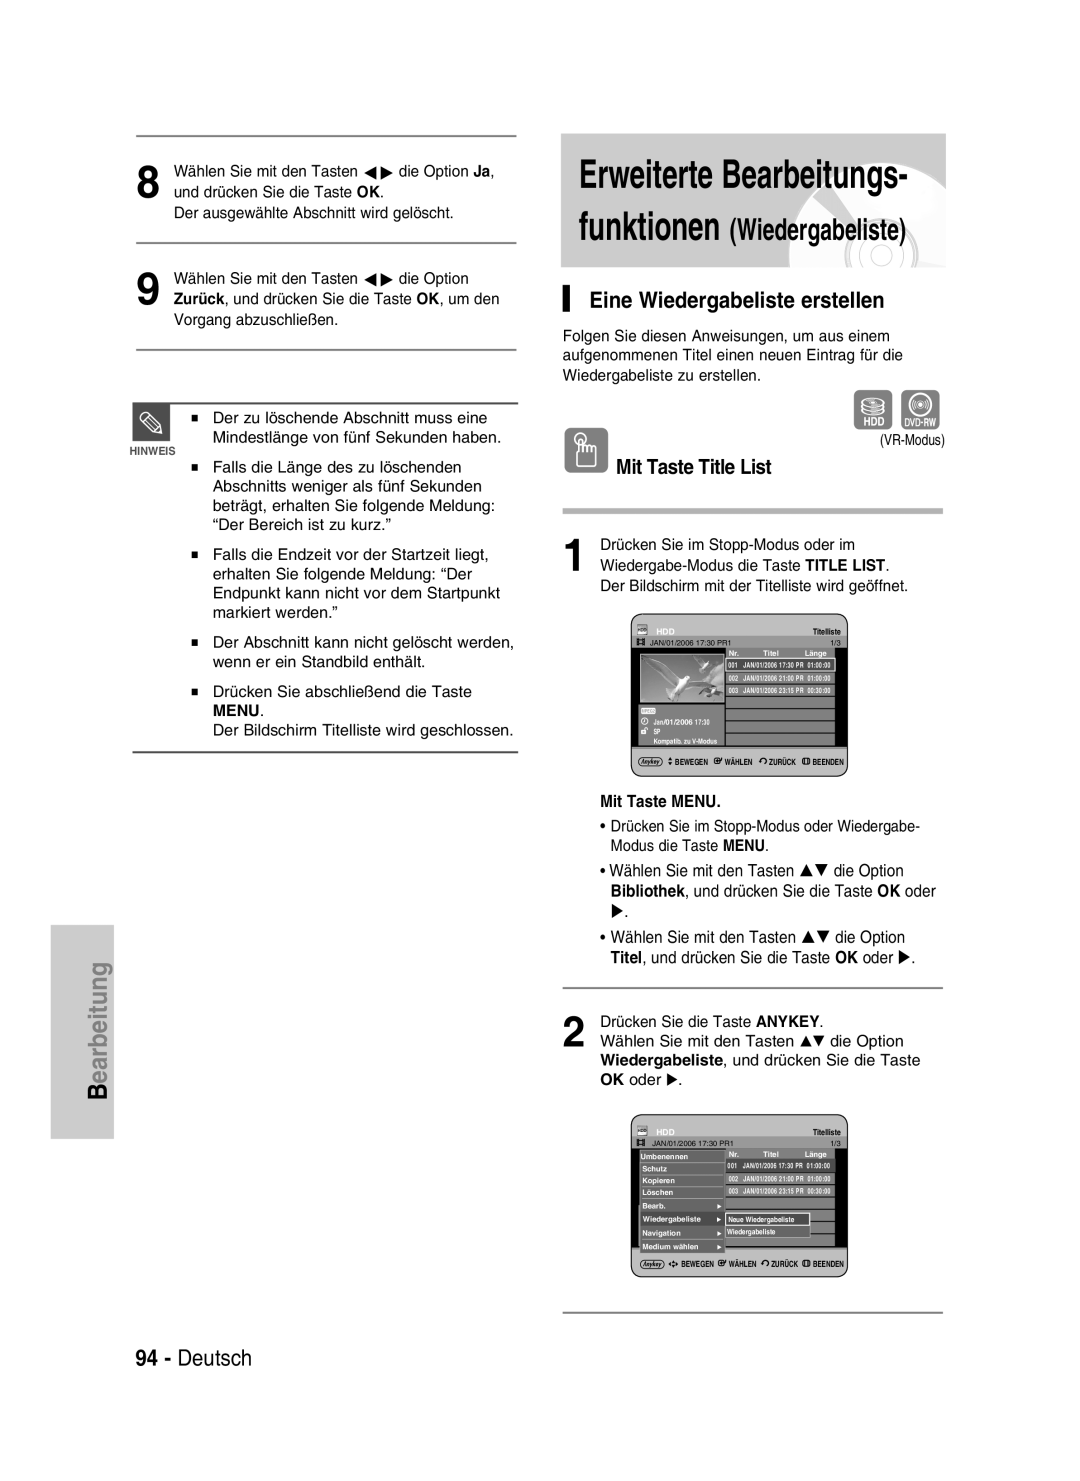 Samsung DVD-HR734/XEG manual Erweiterte Bearbeitungs, funktionen Wiedergabeliste, Eine Wiedergabeliste erstellen, Deutsch 